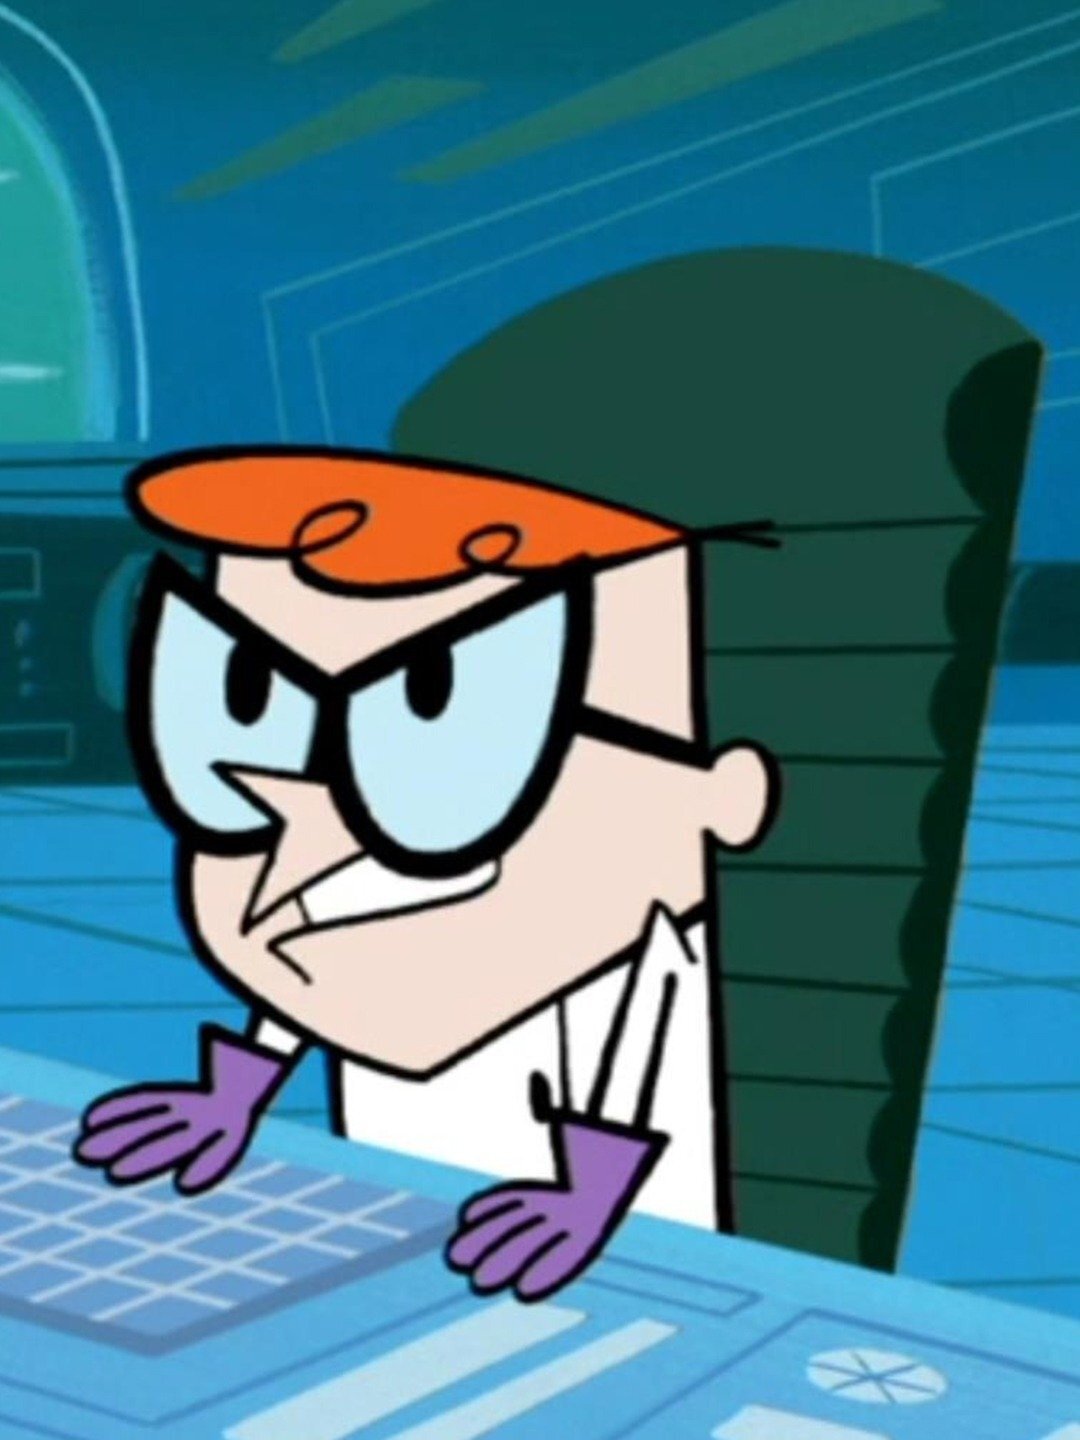 Dexter ser beslutsam ut framför sitt tangentbord